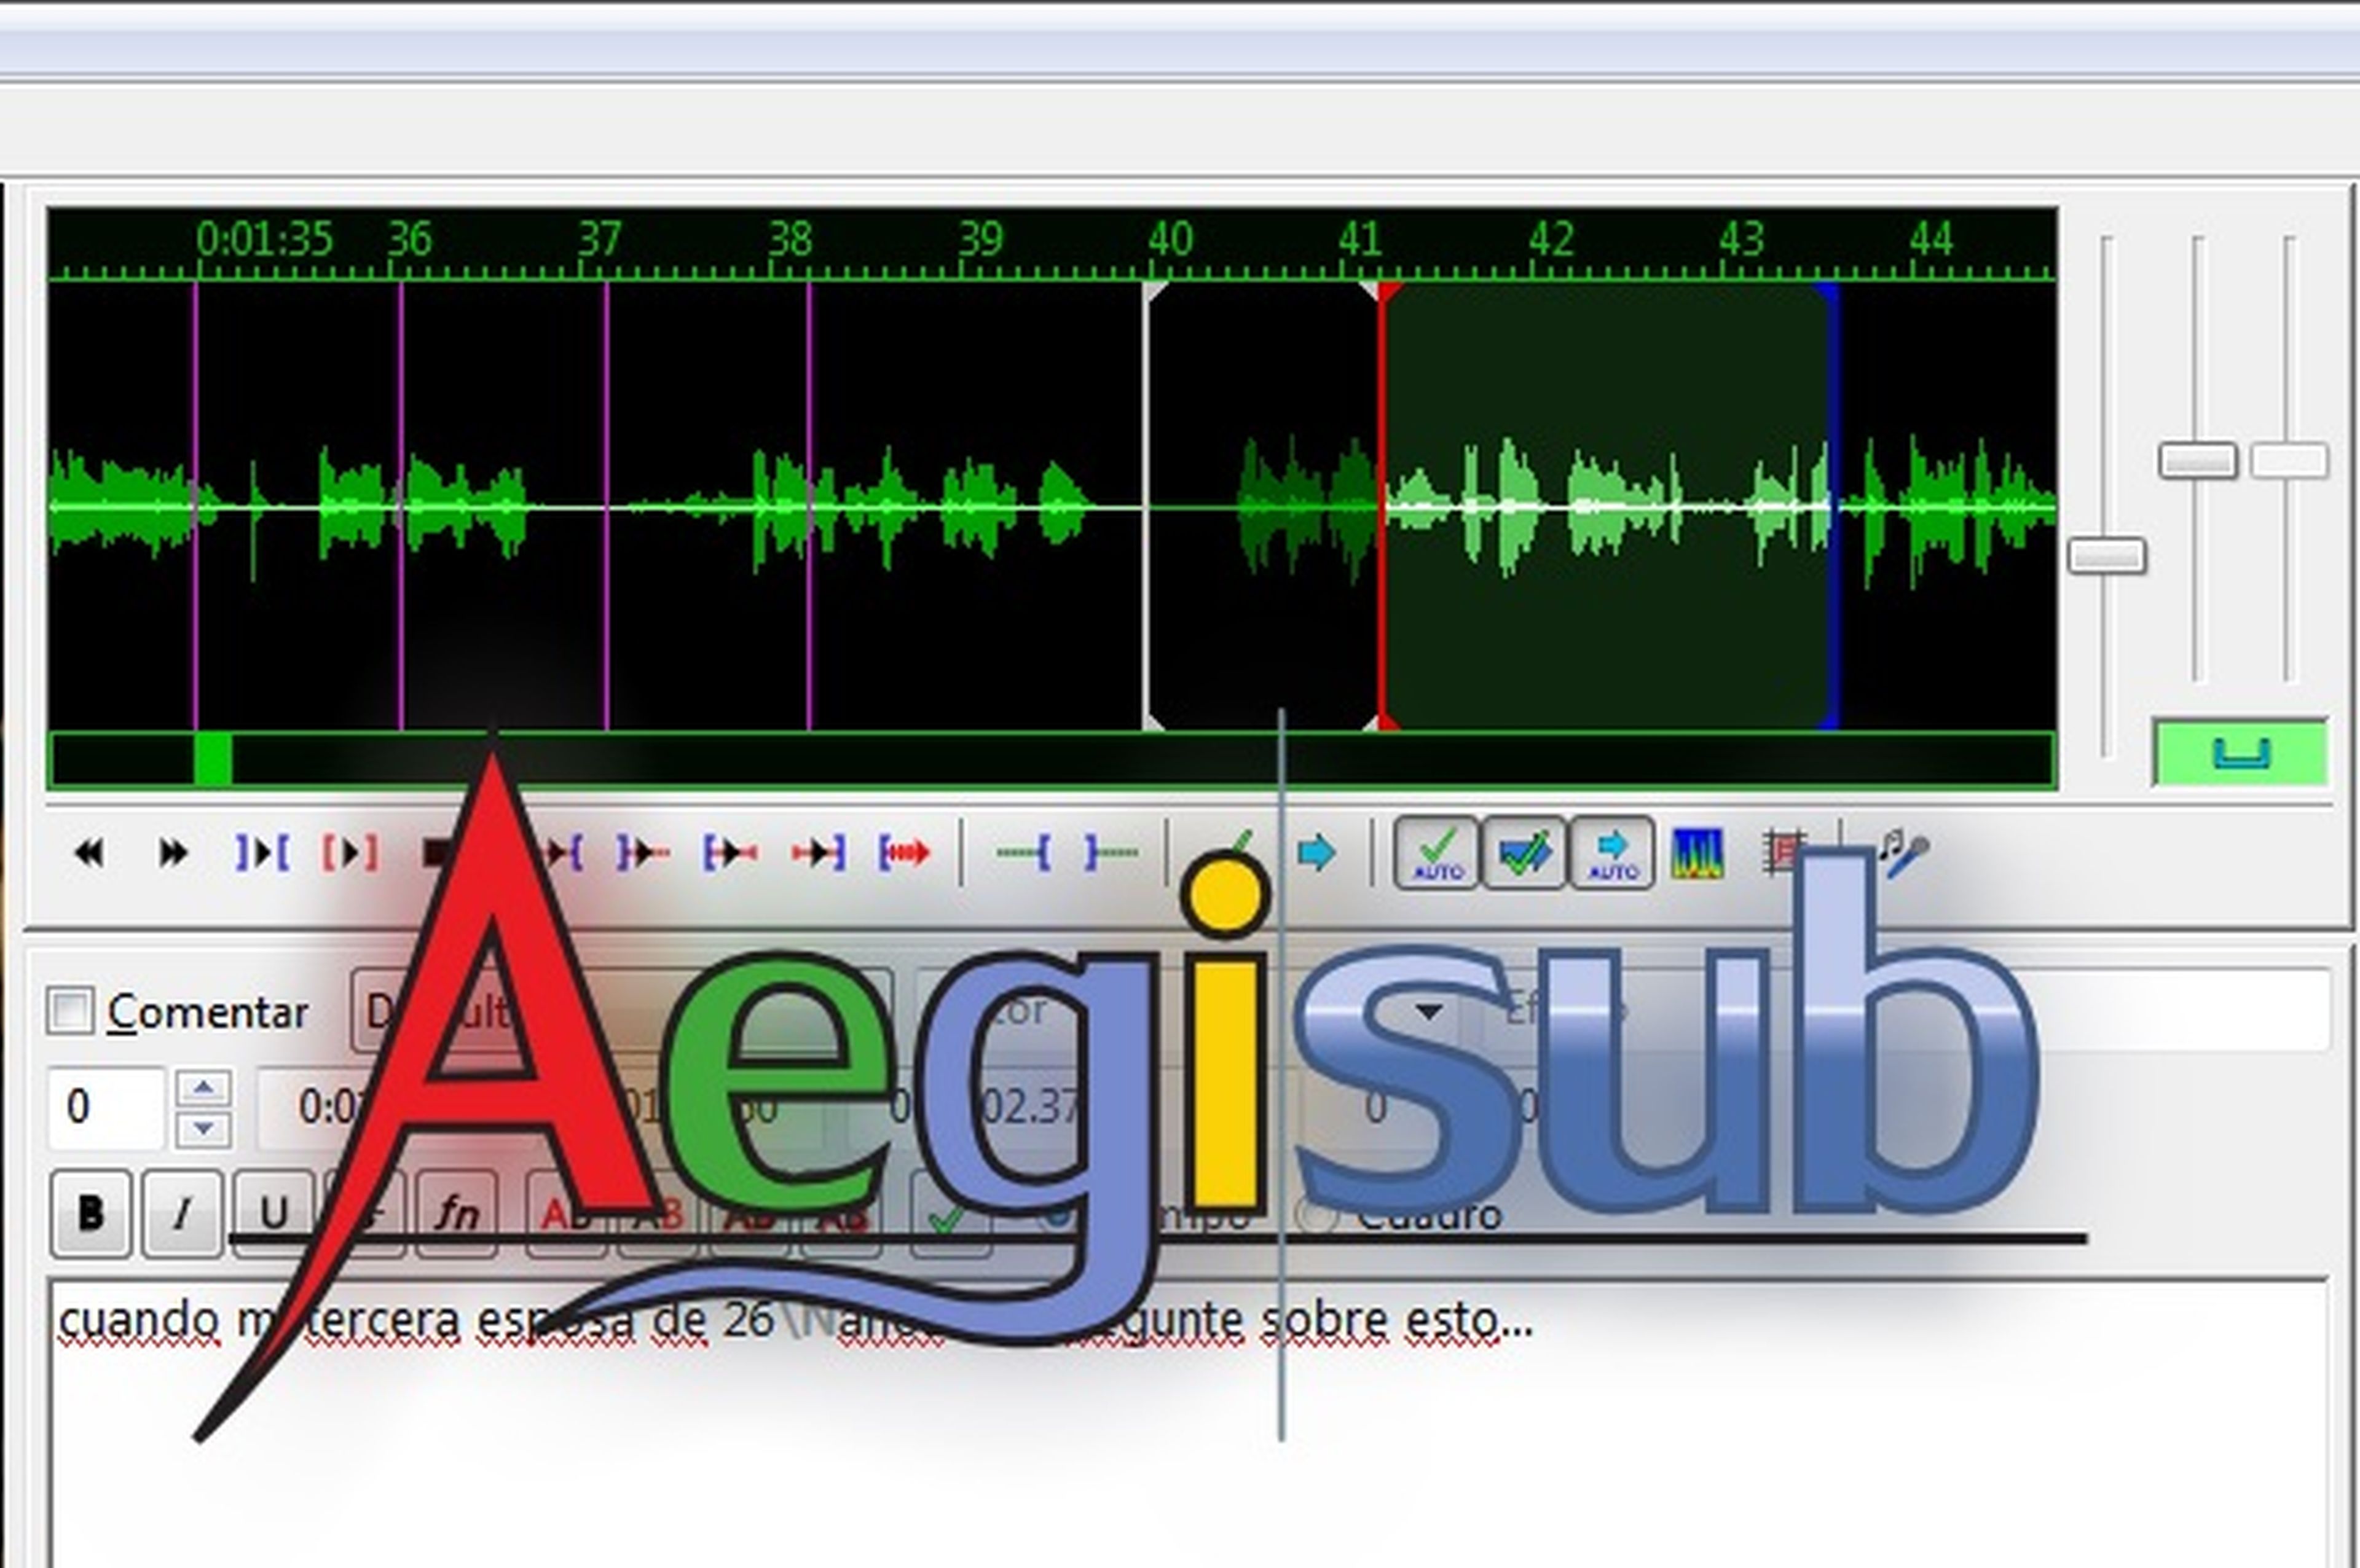 Sincroniza y repara los subtítulos dañados con Aegisub